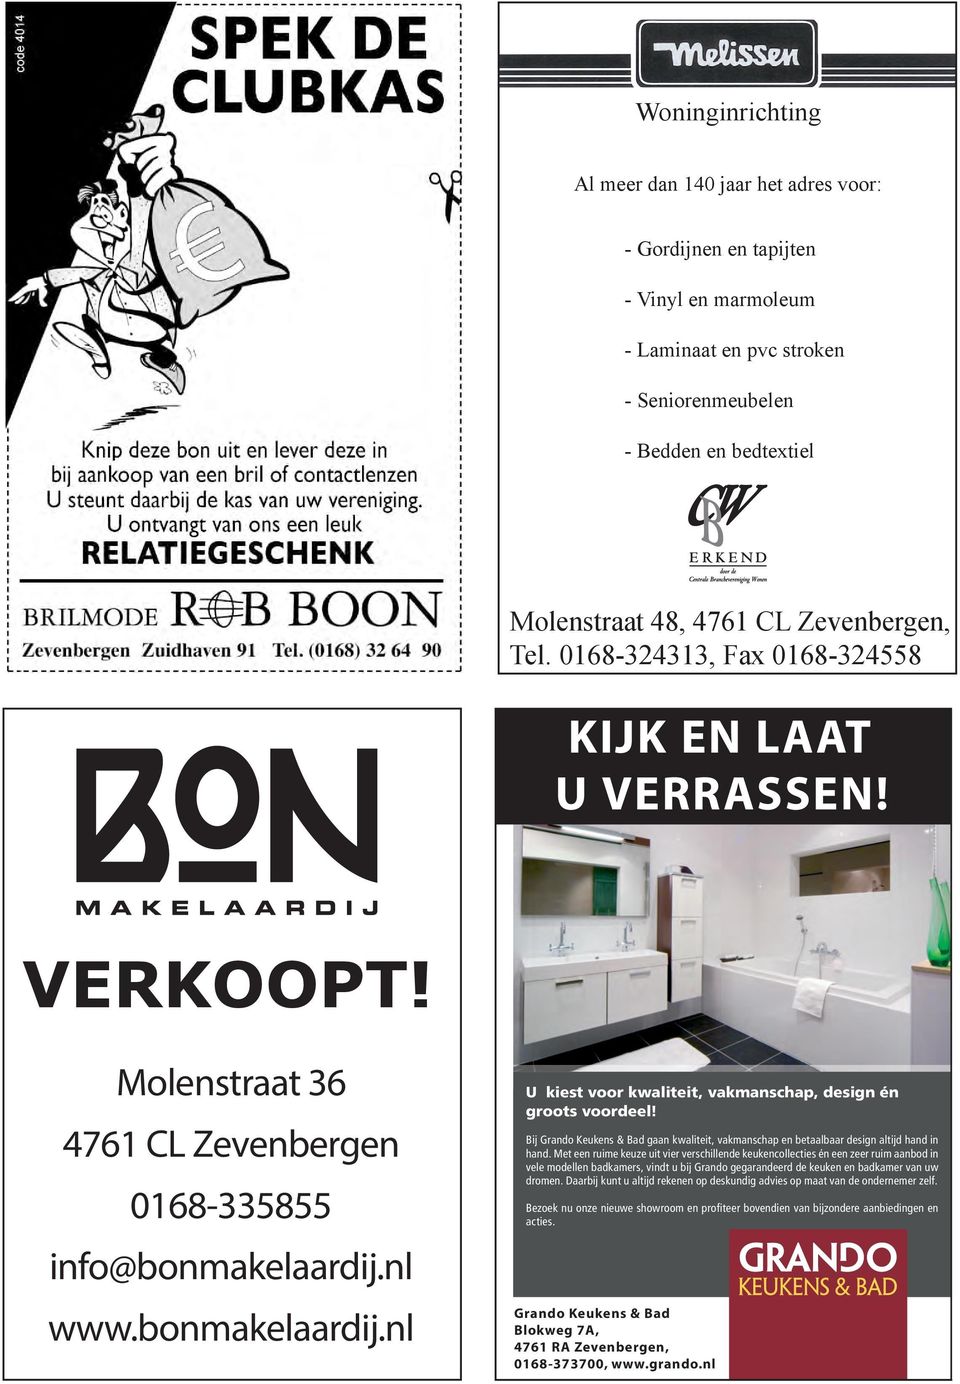 grando.nl Betaalbaar Keukendesign Molenstraat 36 4761 CL Zevenbergen 0168-335855 info@bonmakelaardij.nl www.bonmakelaardij.nl U kiest voor kwaliteit, vakmanschap, design én groots voordeel!